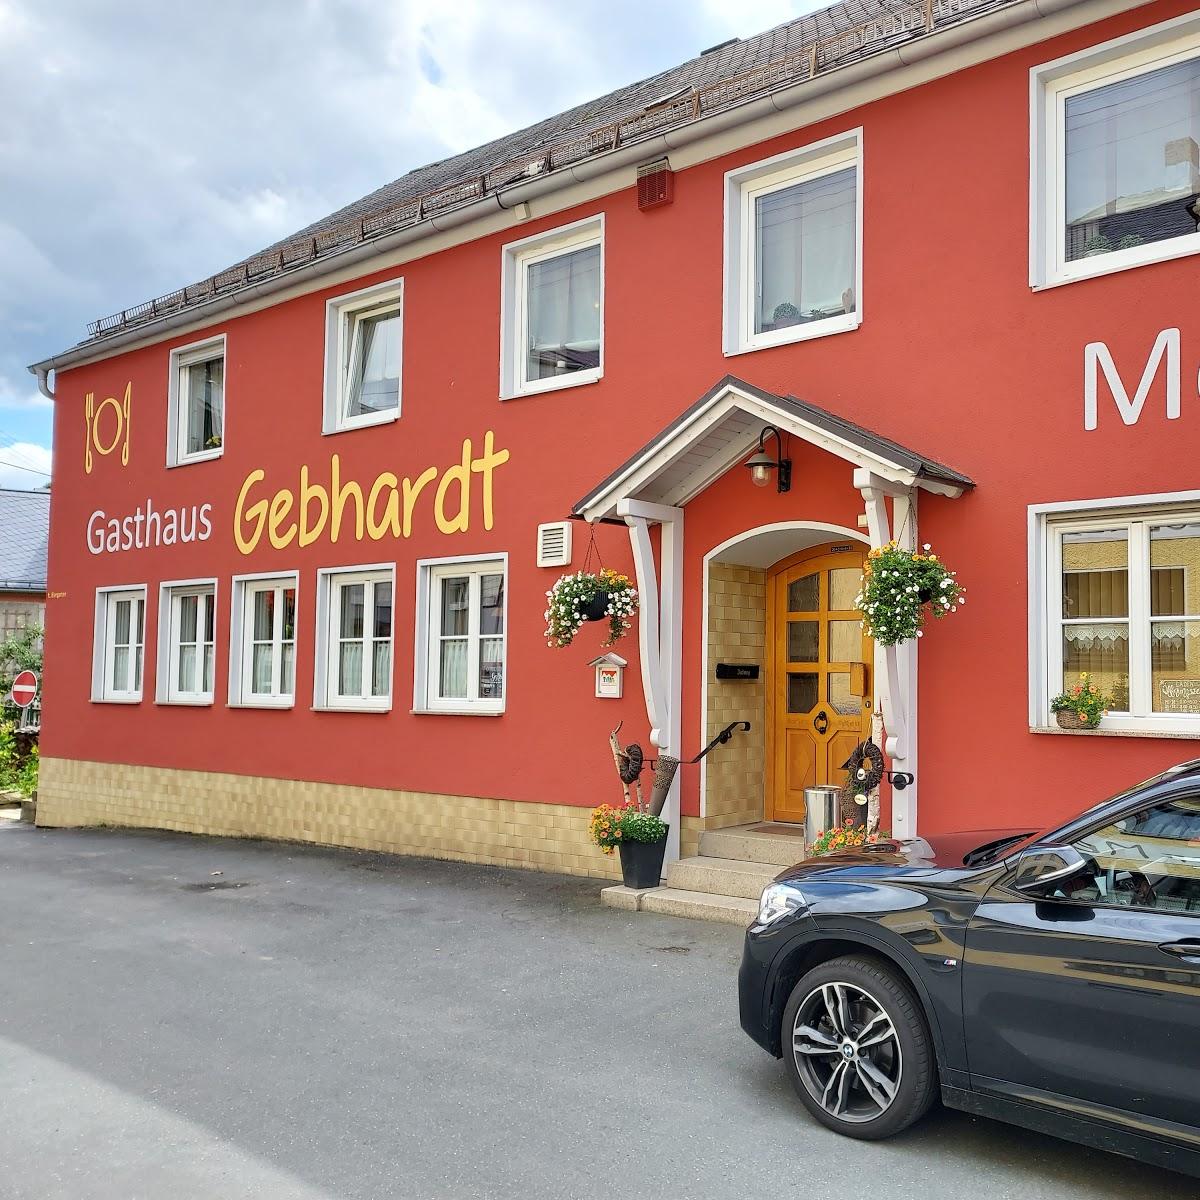 Restaurant "Gasthaus Metzgerei Gebhardt" in Konradsreuth